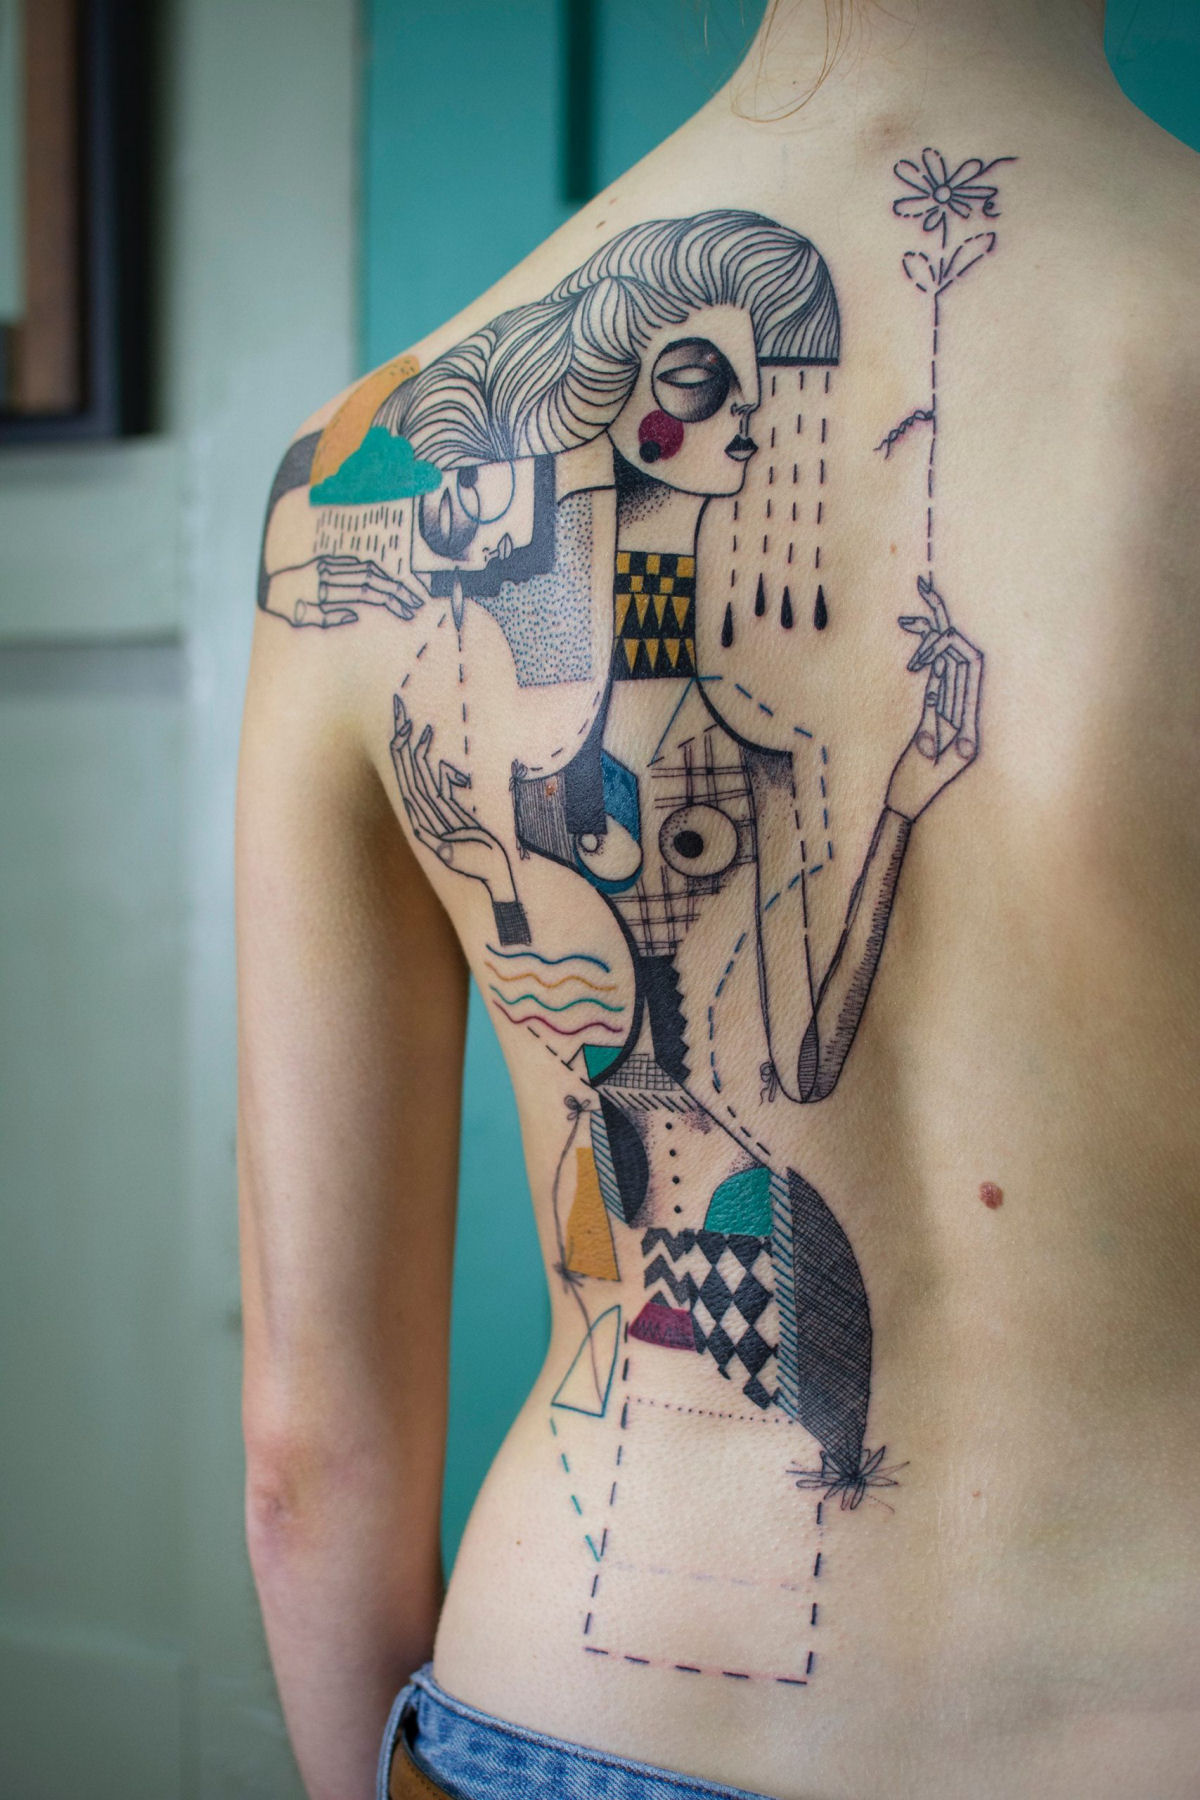 Tatuagens combinam figuras fragmentadas e detalhes geométricos em composições surreais 08